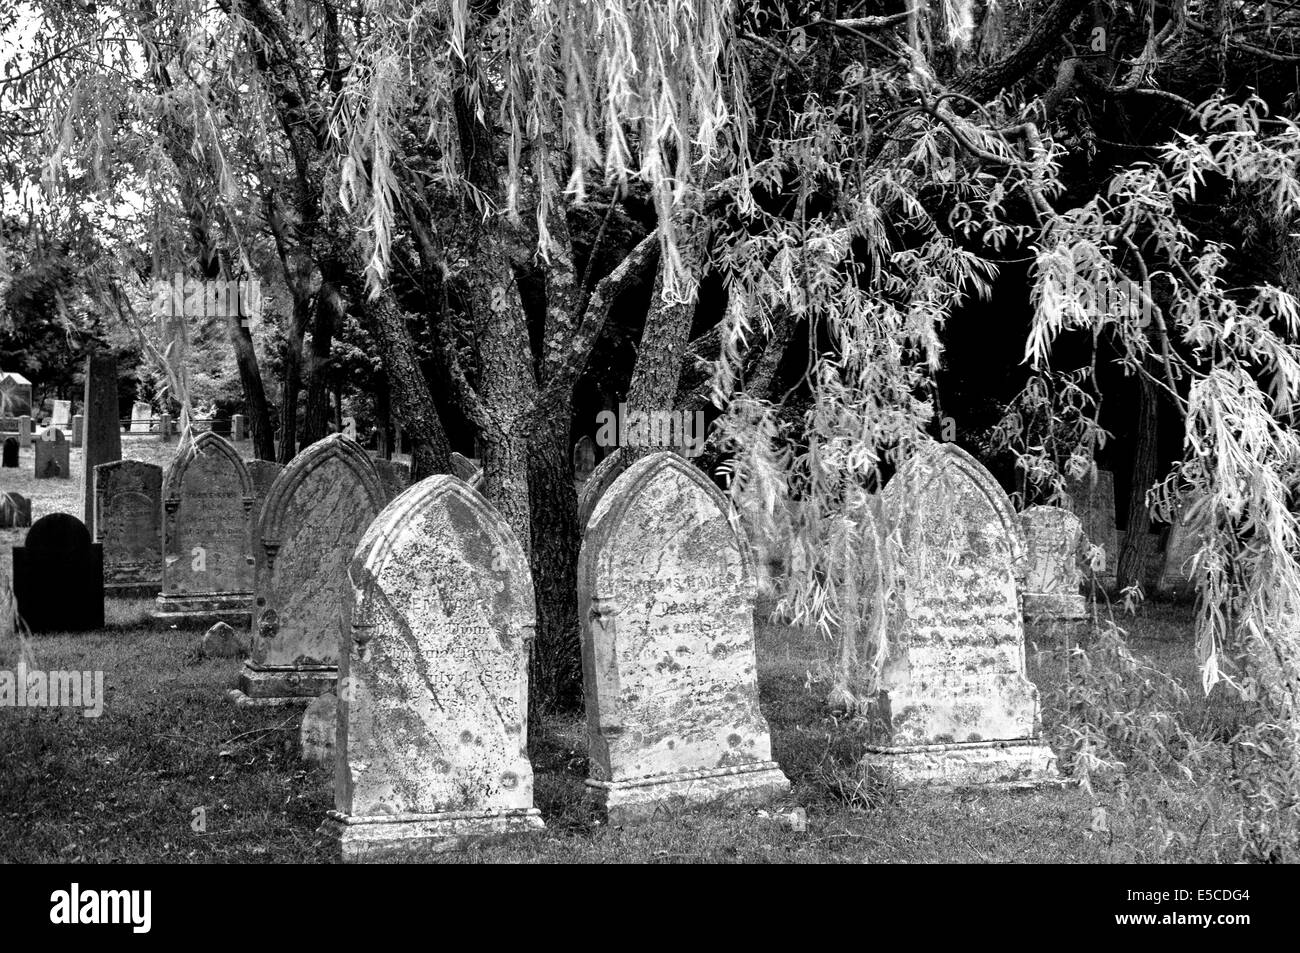 Lápidas antiguas desde la década de 1800 se encuentran en este cementerio en Cape Cod, Massachusetts (MA), EE.UU.. B&W imagen. Foto de stock